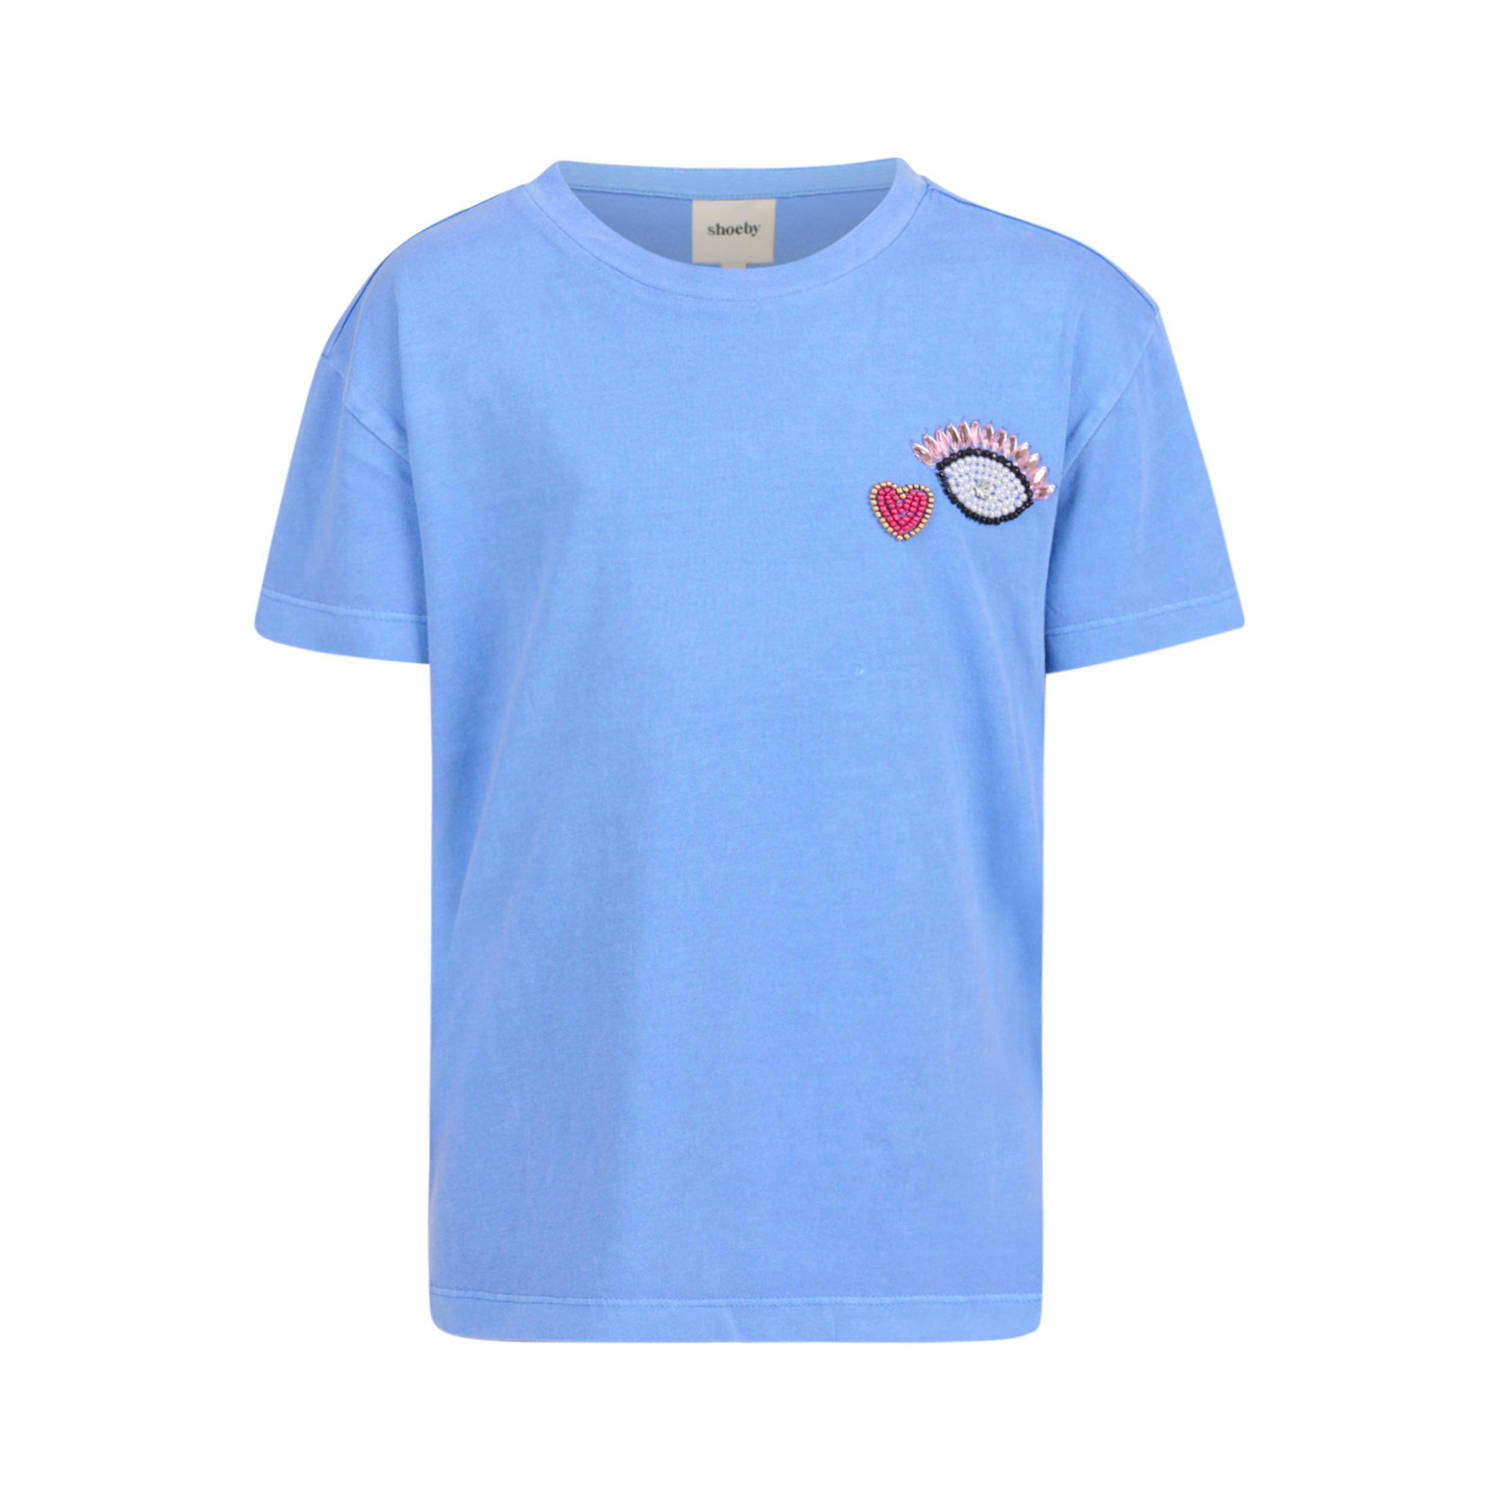 Shoeby T-shirt blauw